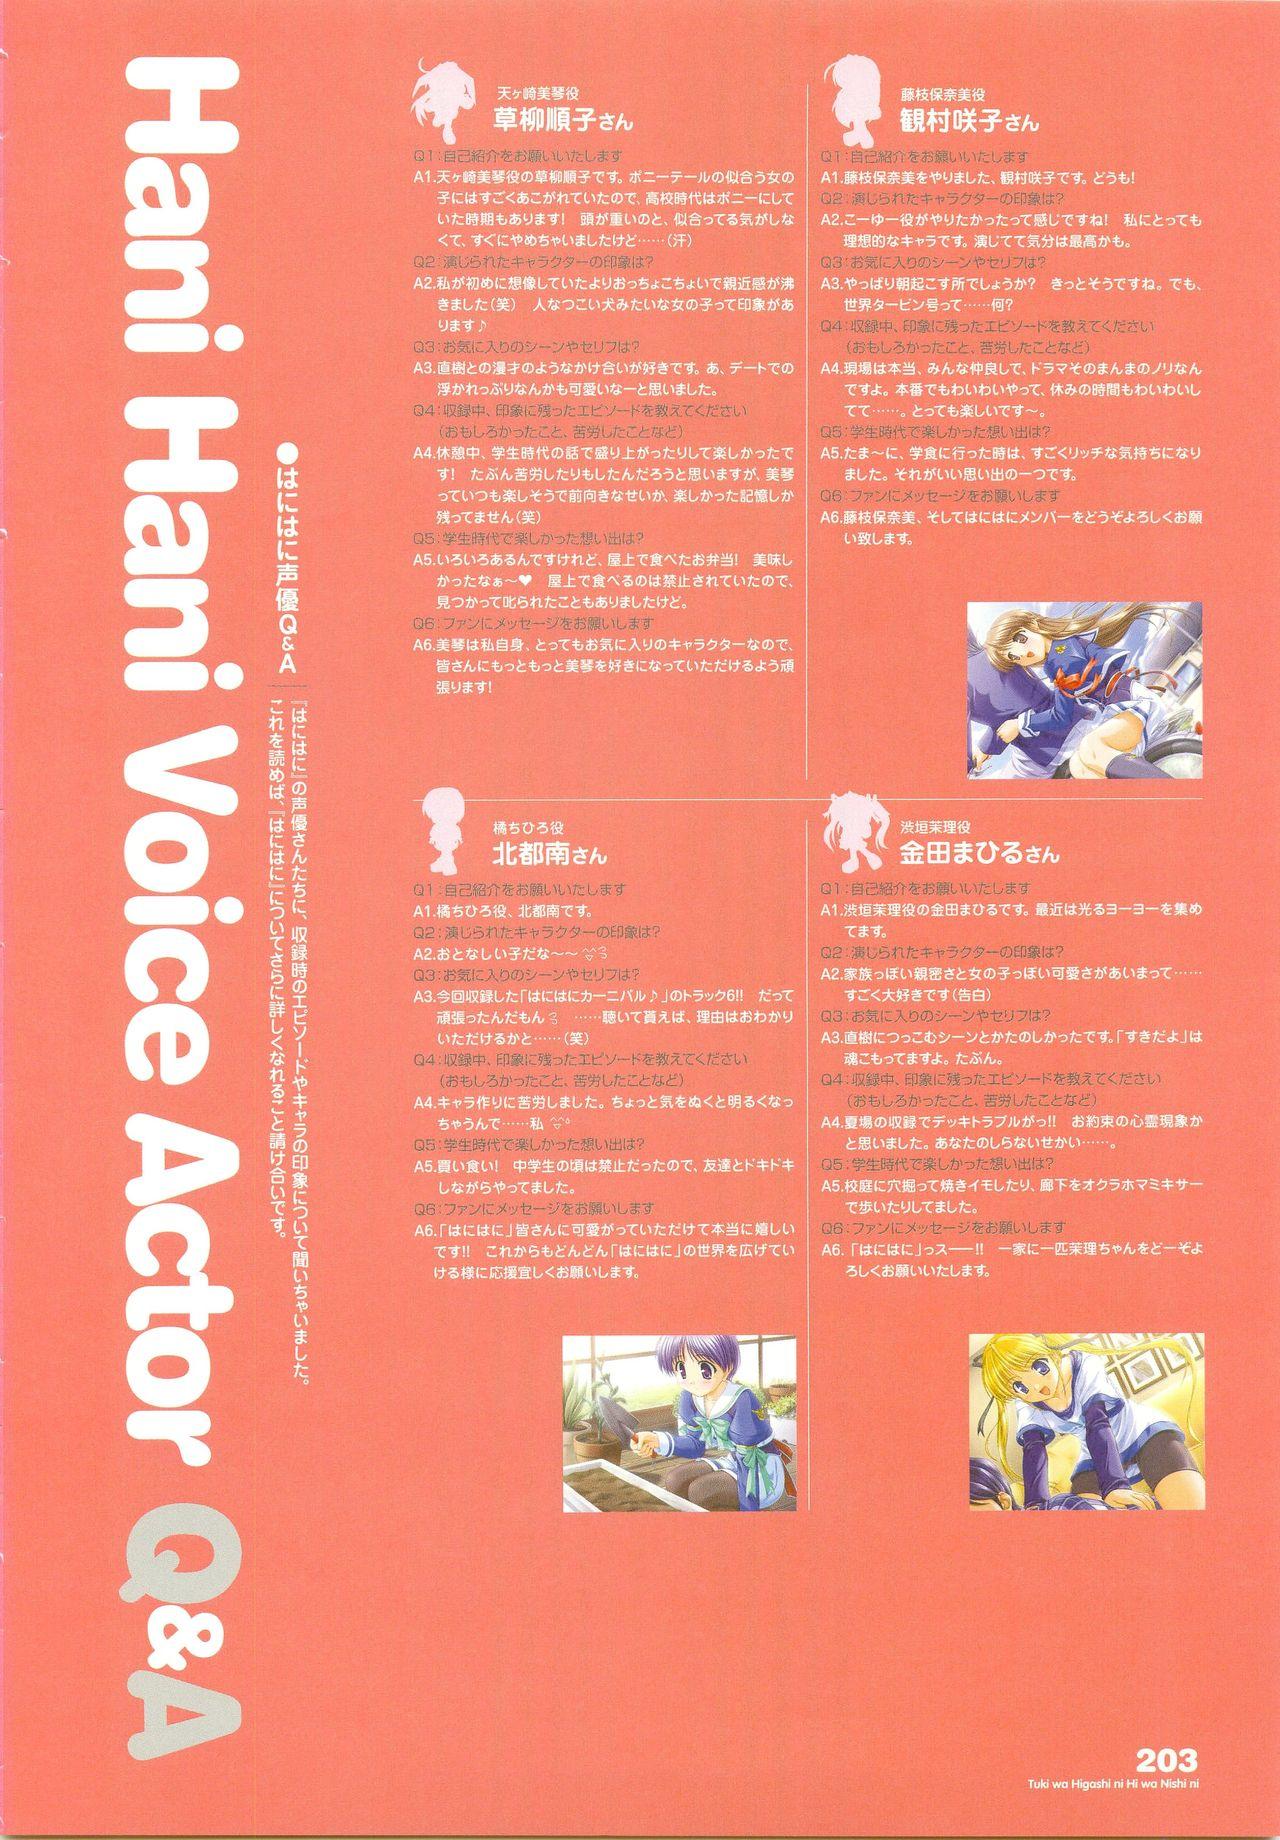 Tsuki wa Higashi ni Hi wa Nishi ni - Operation Sanctuary - Visual Fan Book Shokai Ban 244